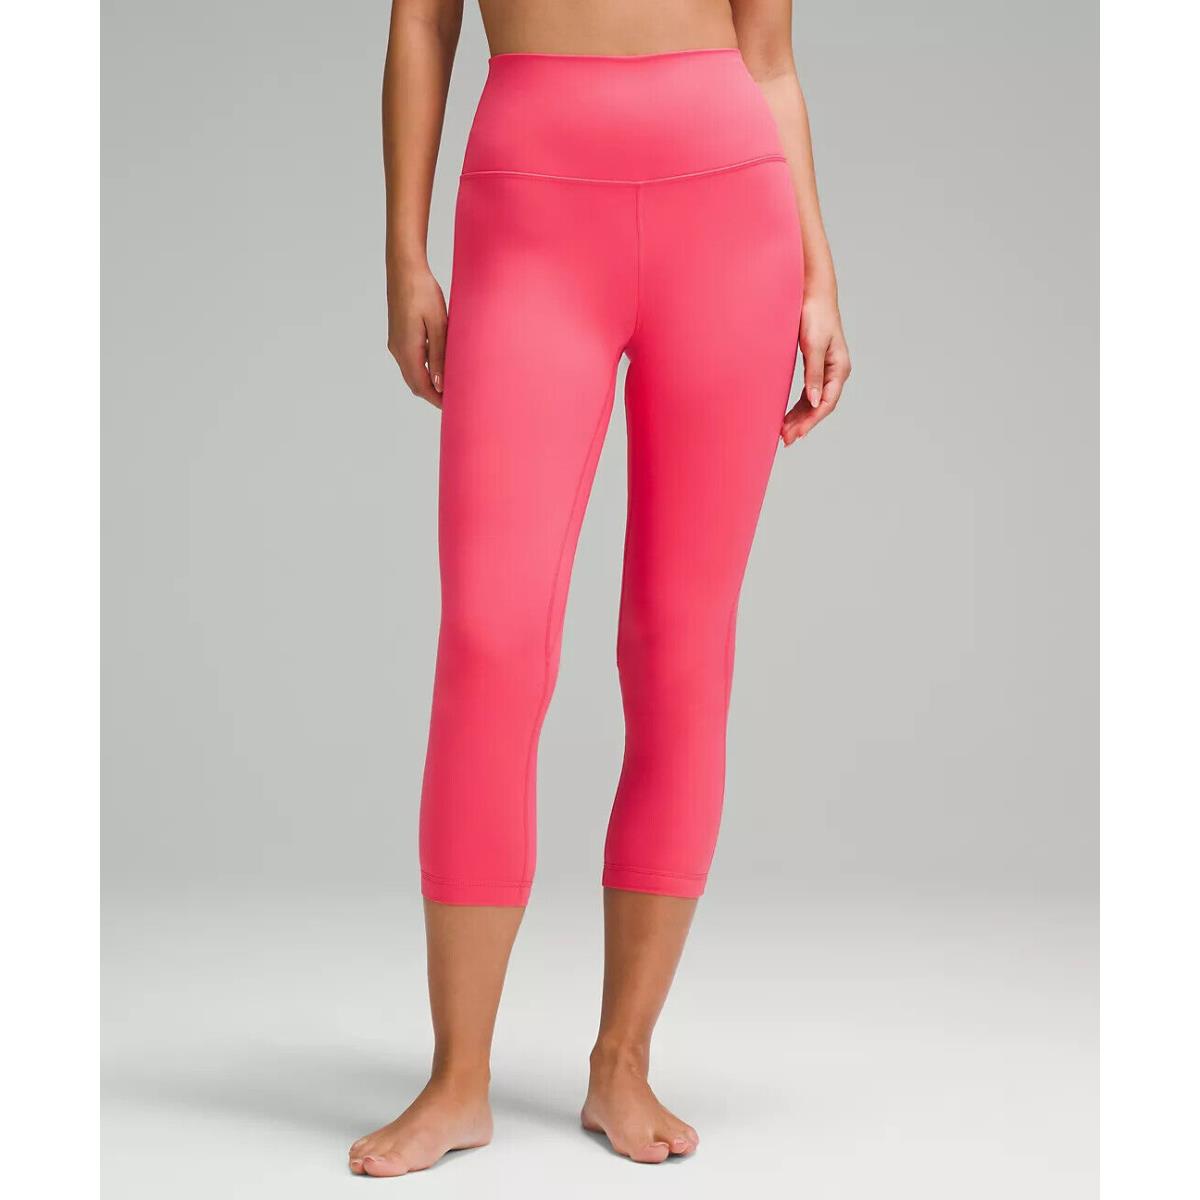 Lululemon Align High Rise Legging Crop 23 - Retail $88-$98 Glaze Pink (Lined)